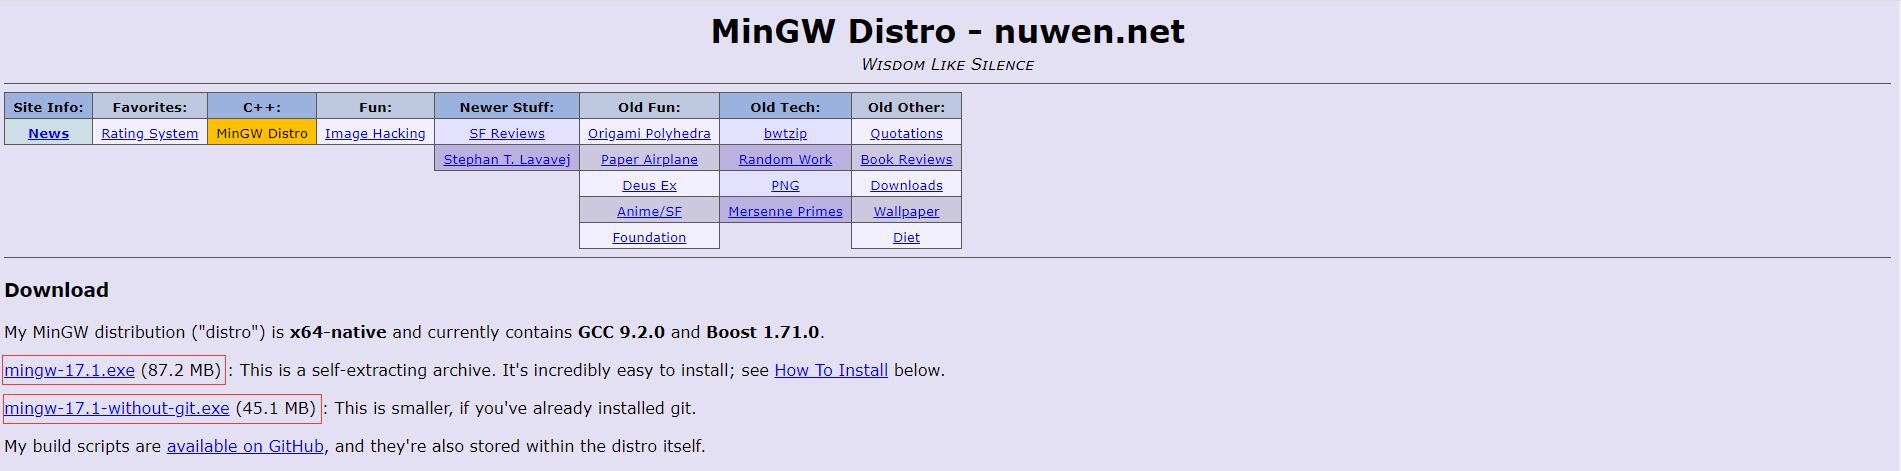 MinGW下载页面